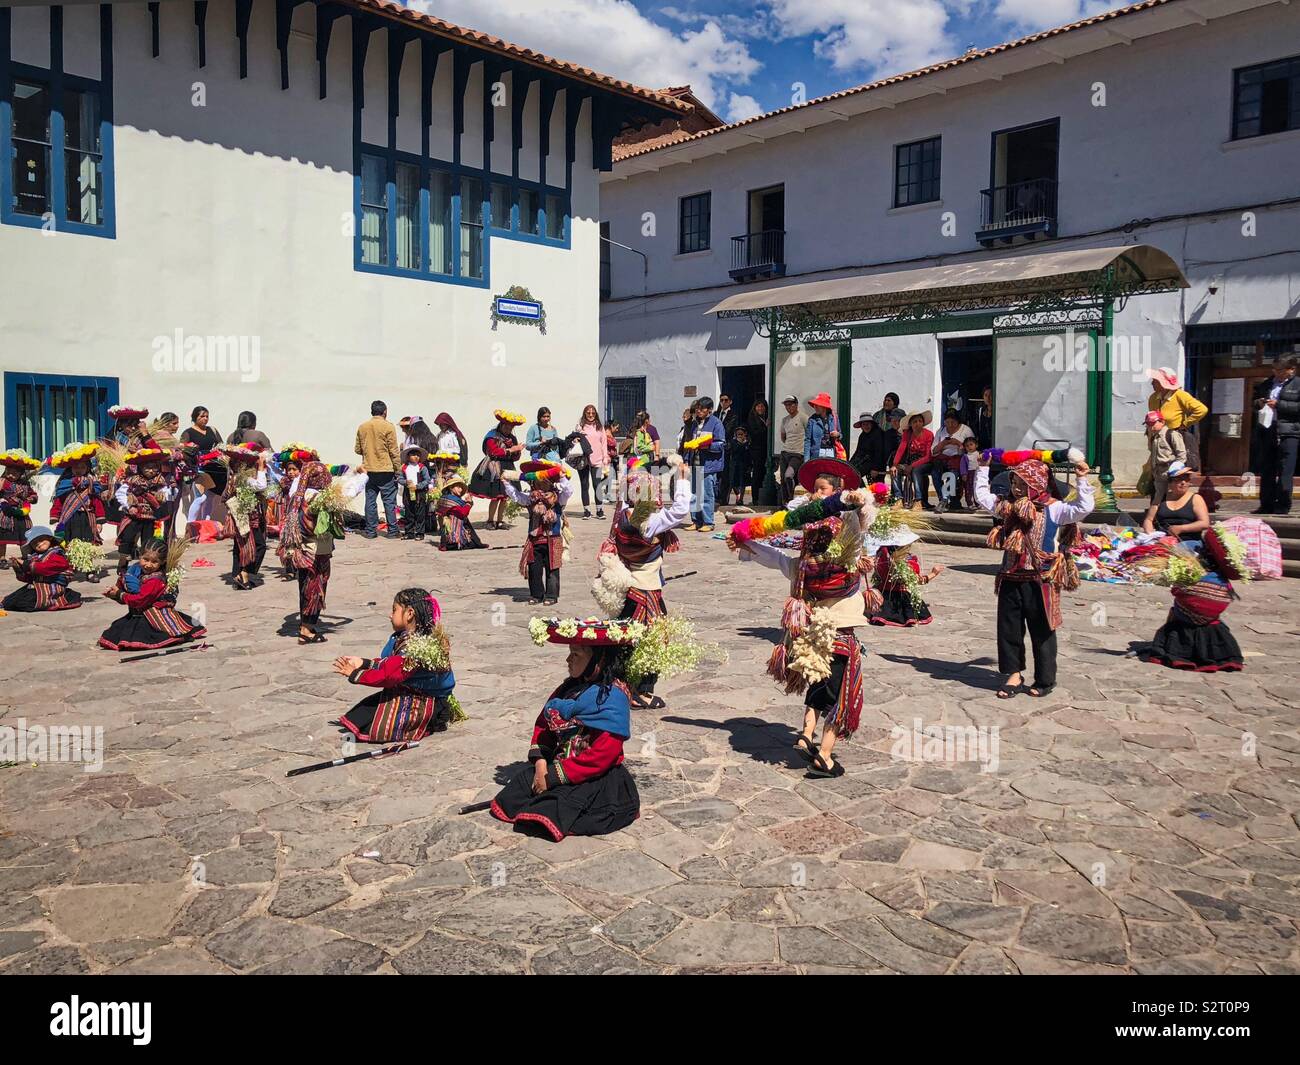 Farbenfroh gekleideten peruanischen Kinder üben üben üben ihren Tanz für das Inti Raymi oder Inti Raymi' rata Sun Festival für die Wintersonnenwende in Cuzco Cuzco Peru Peru. Stockfoto